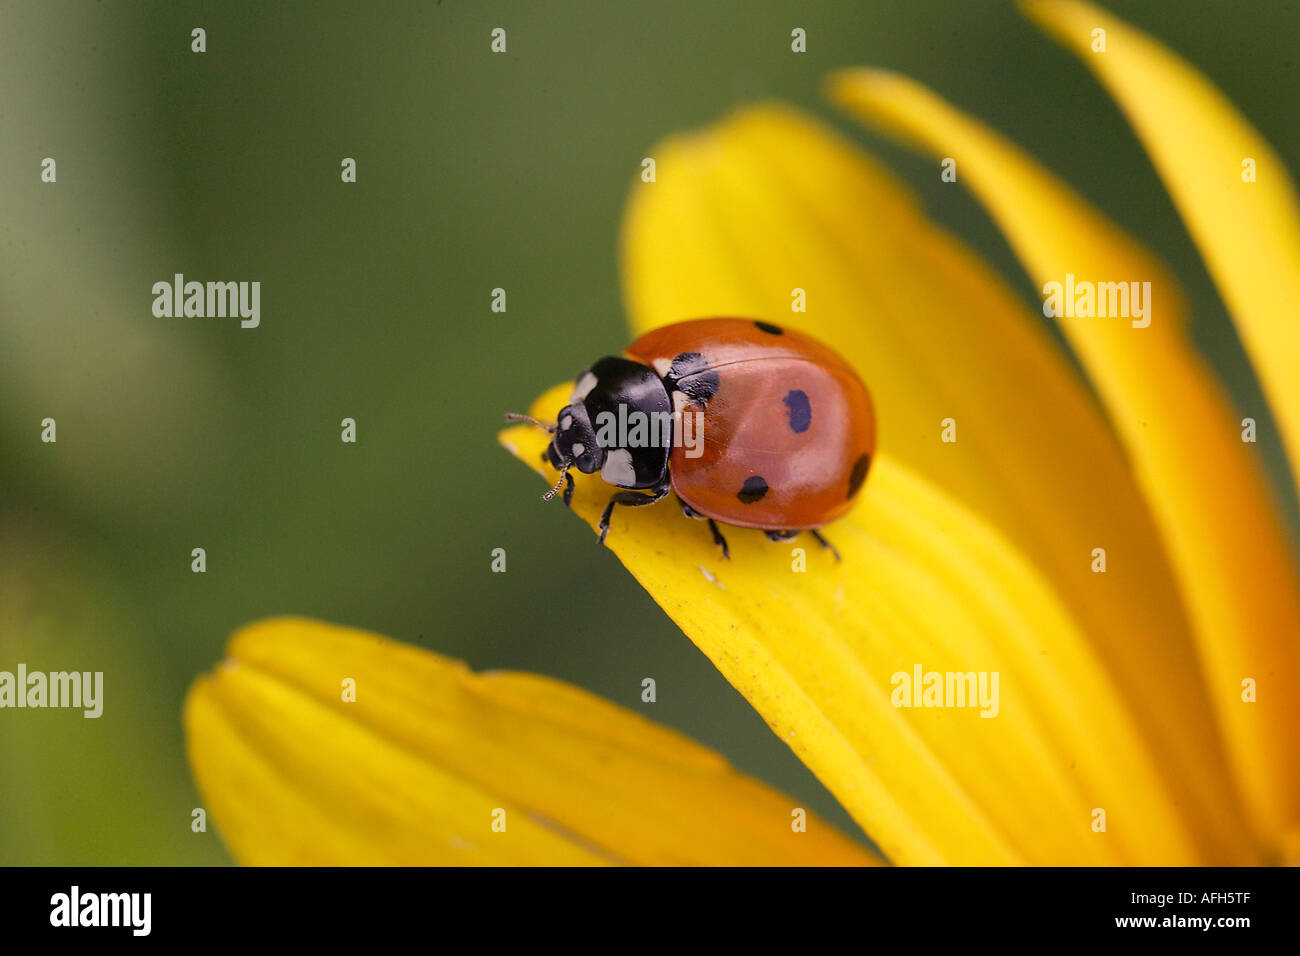 ladybug on a flower Stock Photo